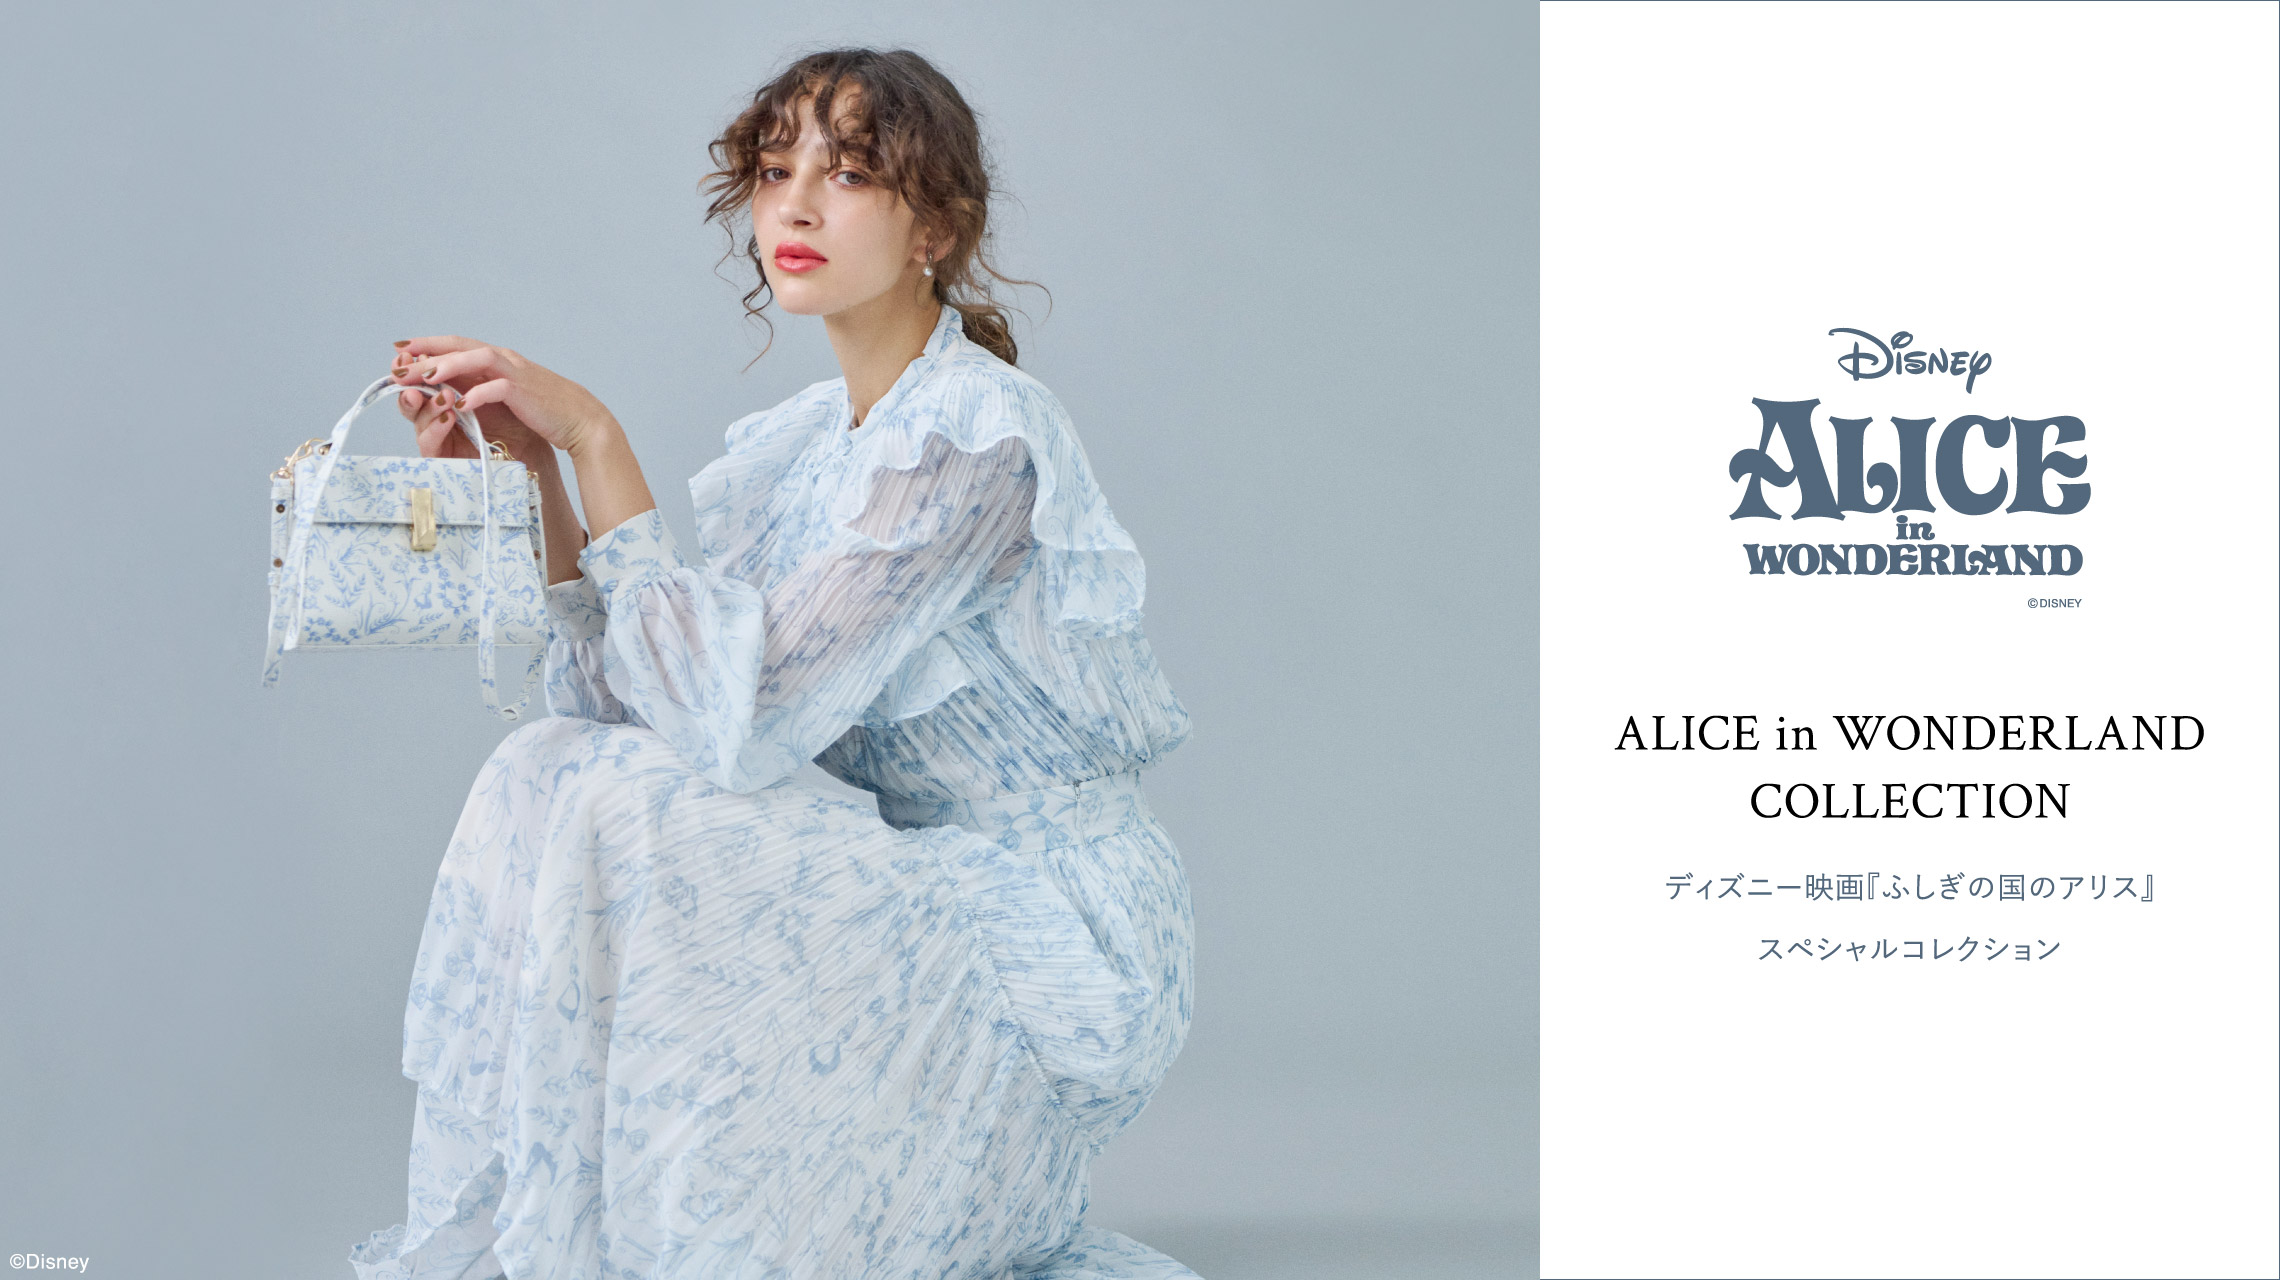 ALICE in WONDERLAND COLLECTION ディズニー映画『ふしぎの国のアリス』スペシャルコレクション